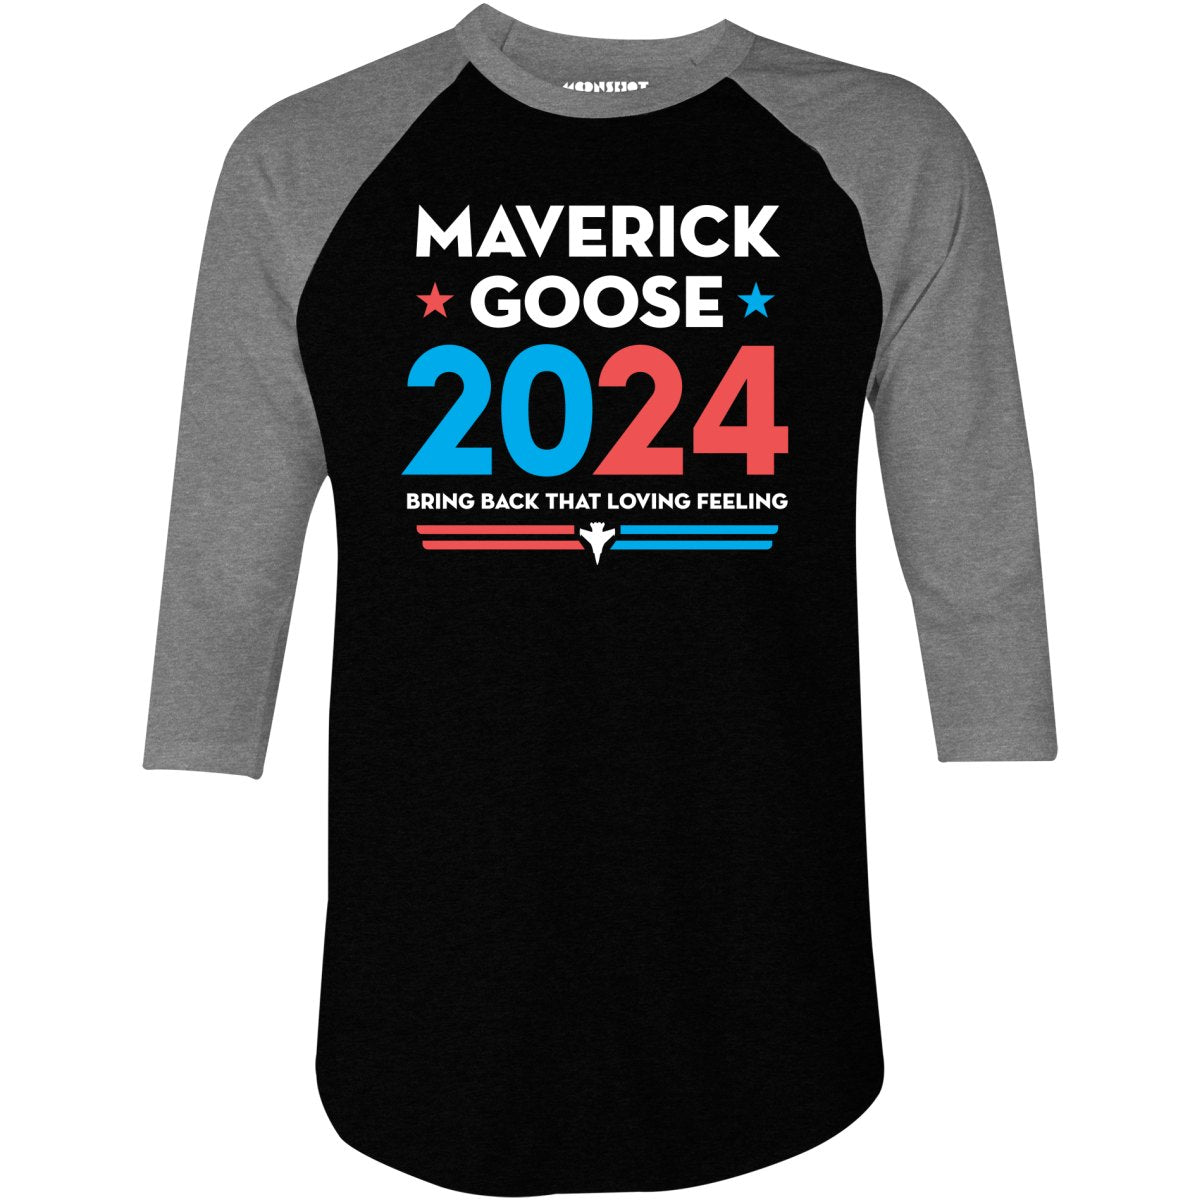 Maverick Goose 2024 - 3/4 Sleeve Raglan T-Shirt